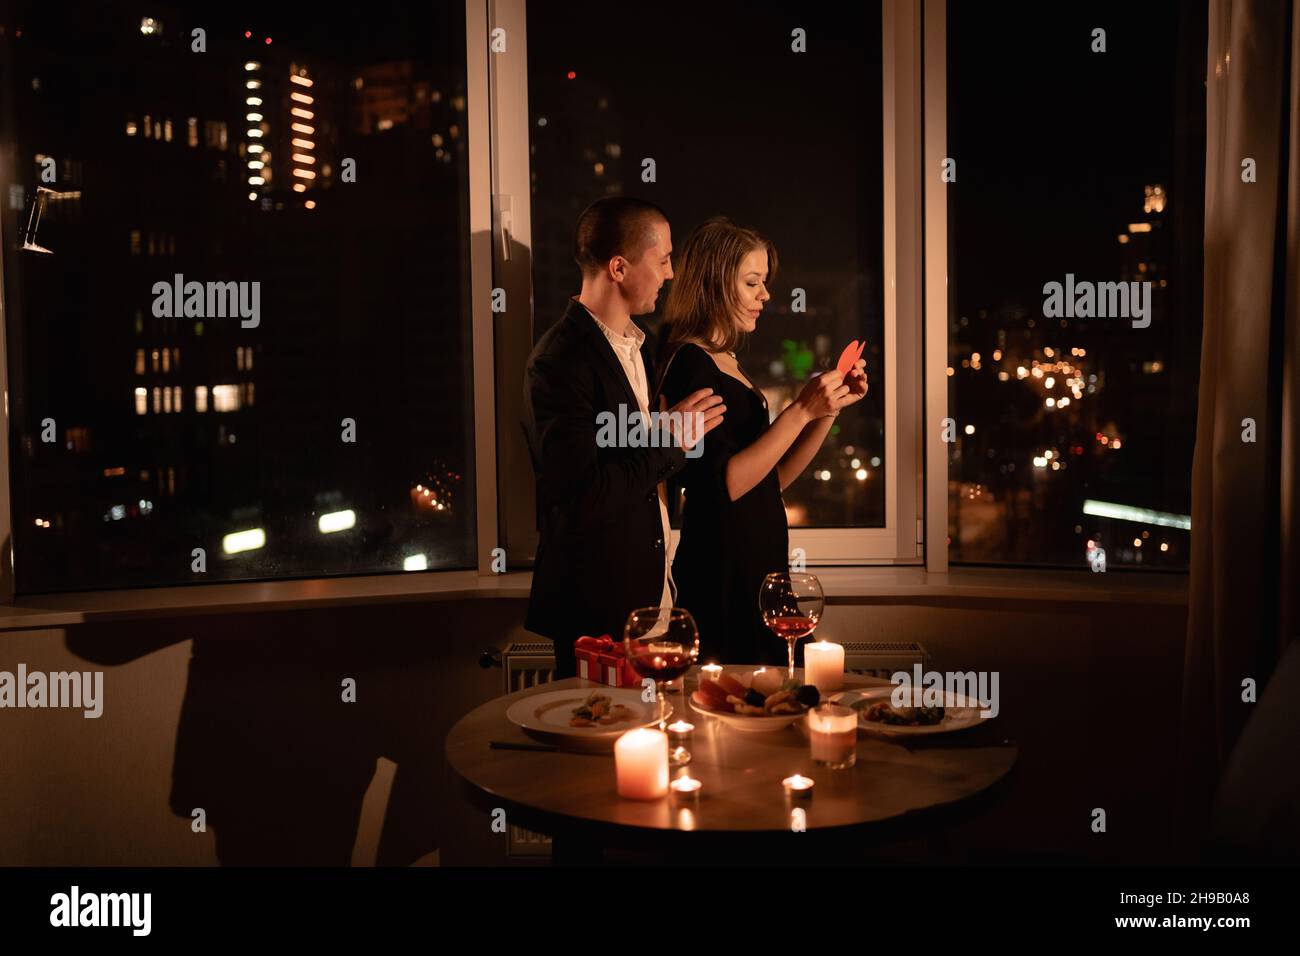 Coppia in amore festeggiando San Valentino cena con candele, anniversario o data di notte in un ristorante, finestre scure sfondo, uomo appassionato Foto Stock